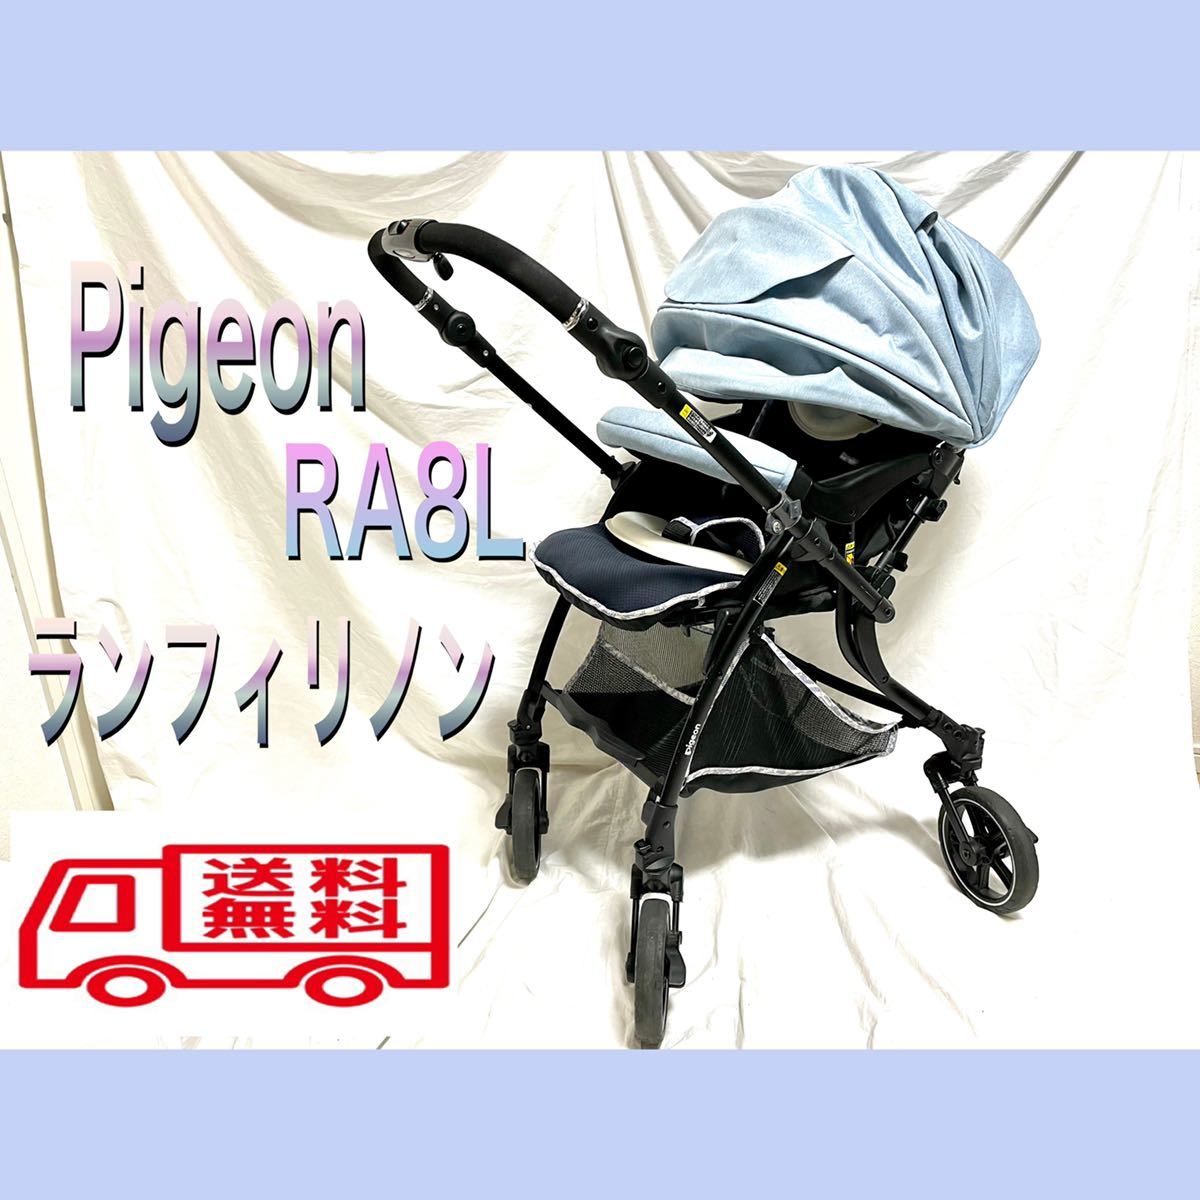 ヤフオク! - Pigeon/ピジョン ランフィリノン RA8L ベビーカー